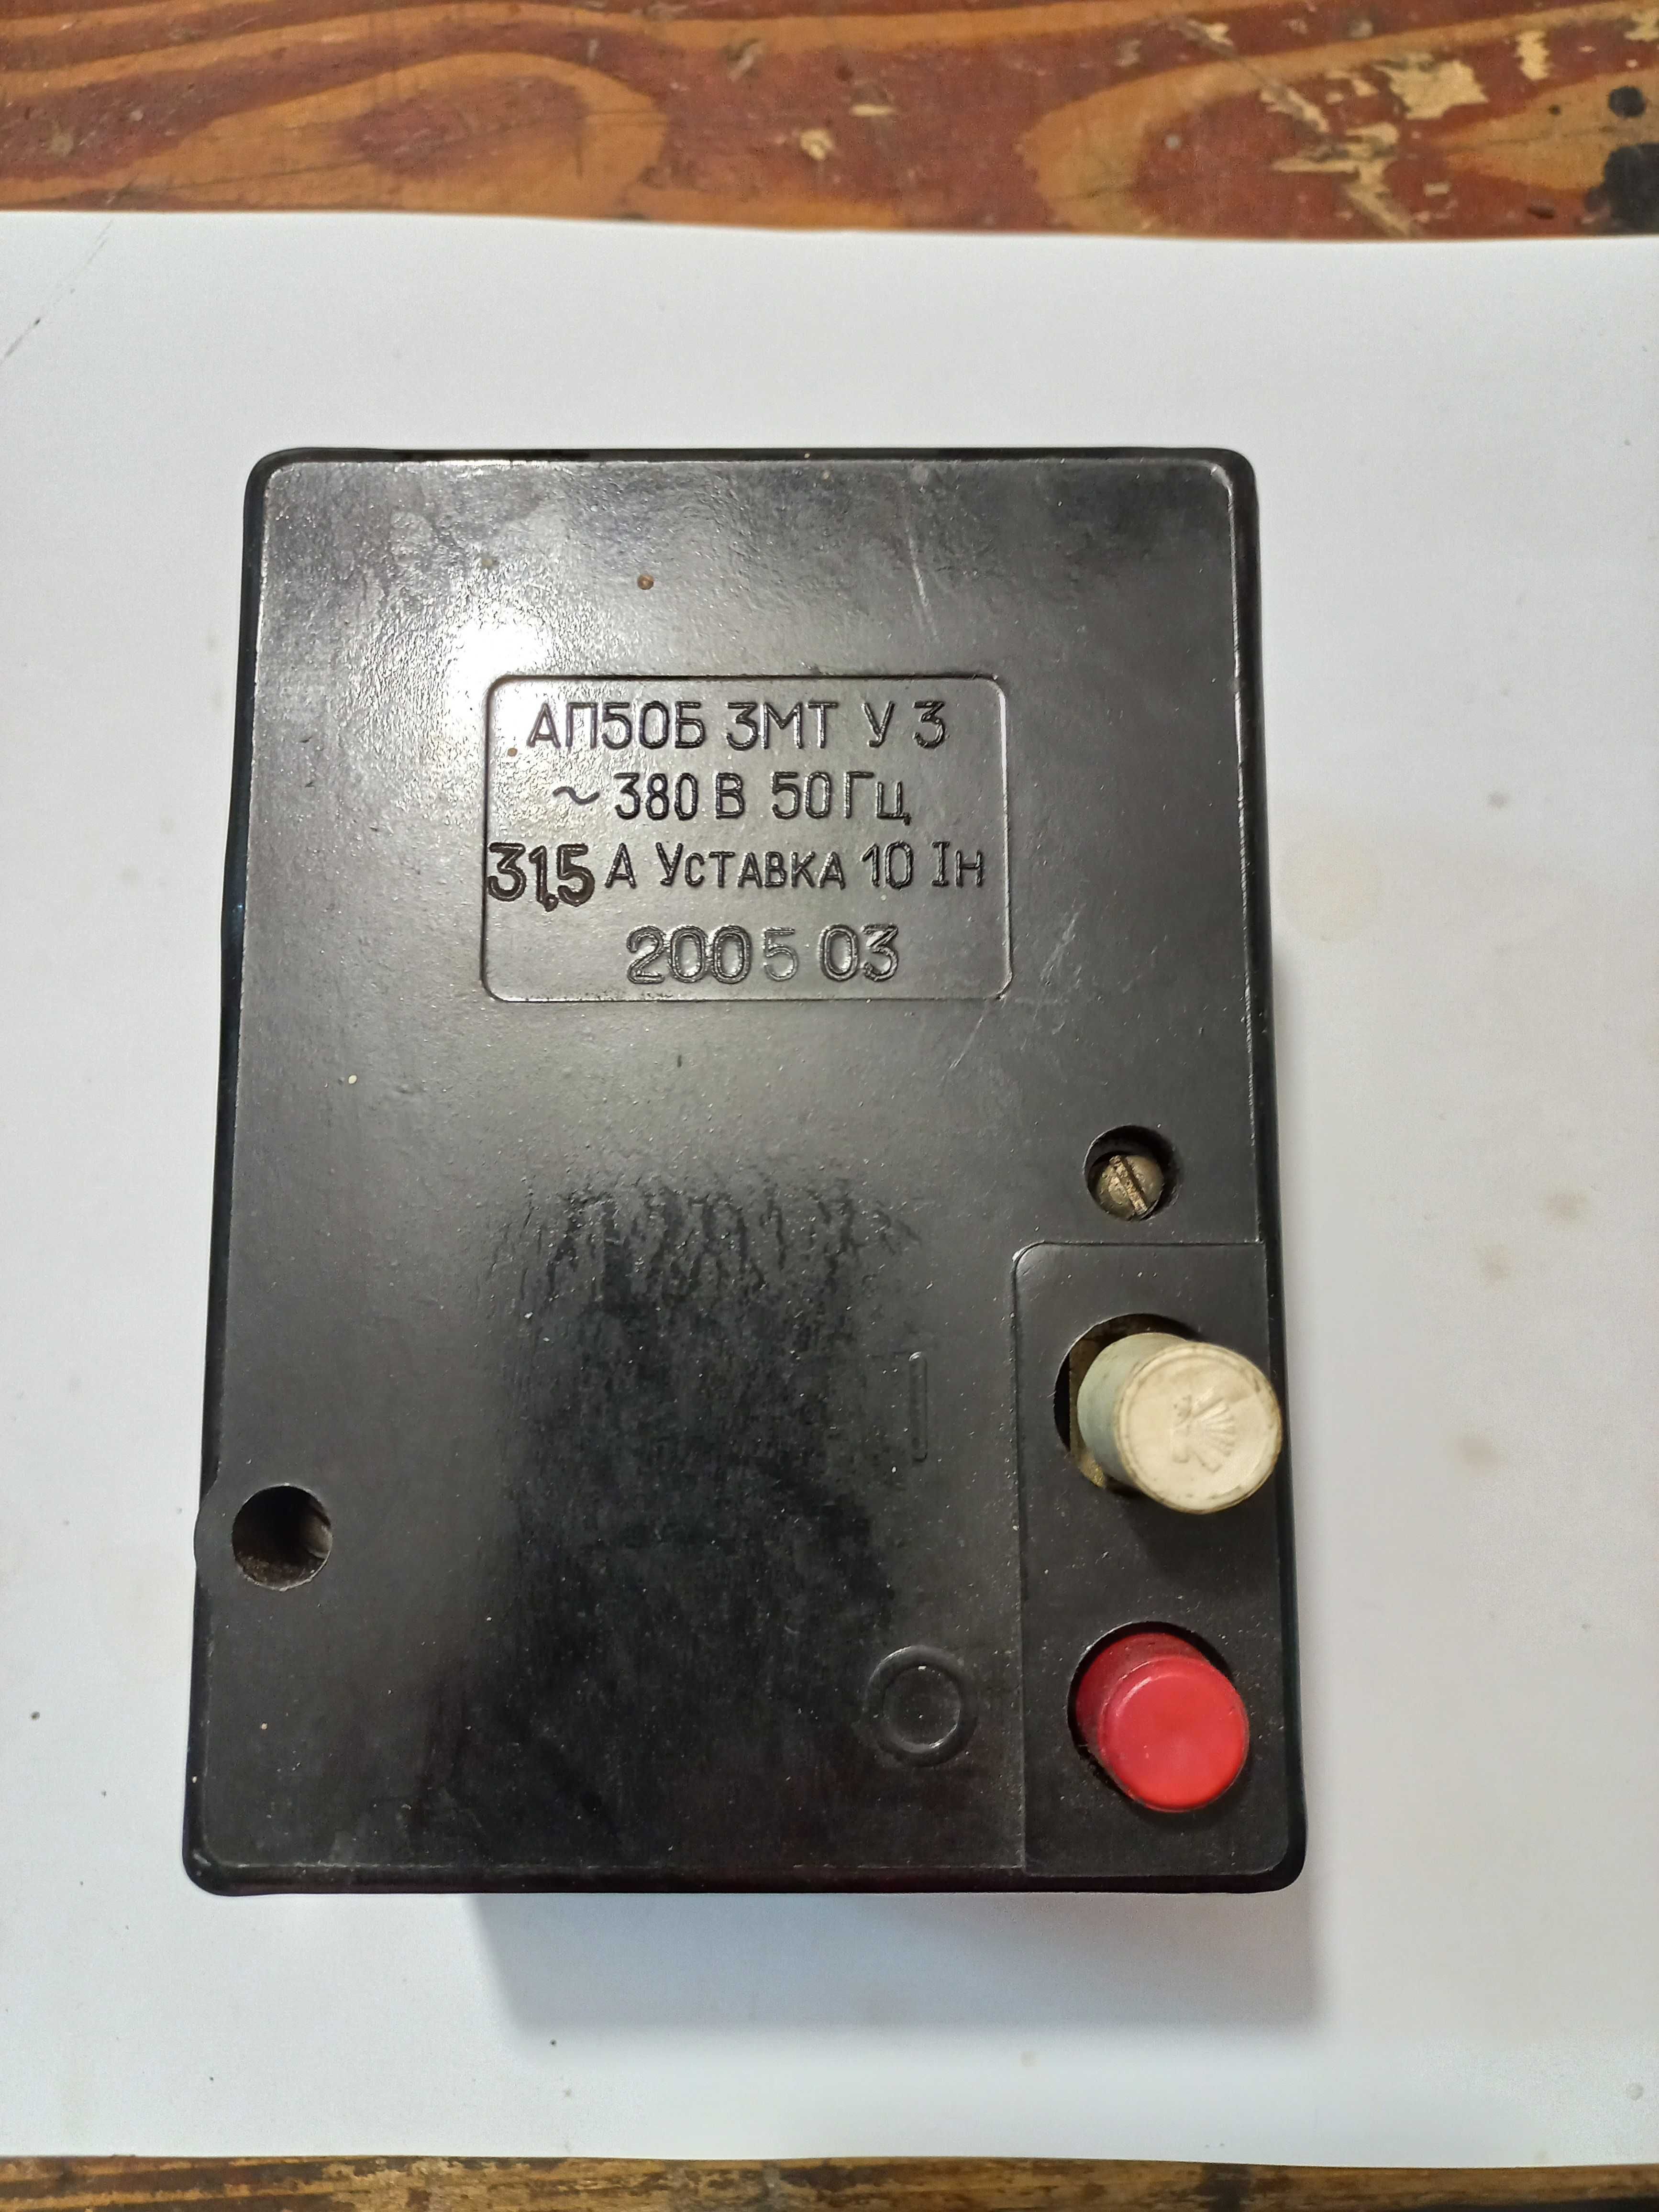 Автоматический выключатель  АП50Б  3МТ  У 3 ~380В  50 Гц 31,5А